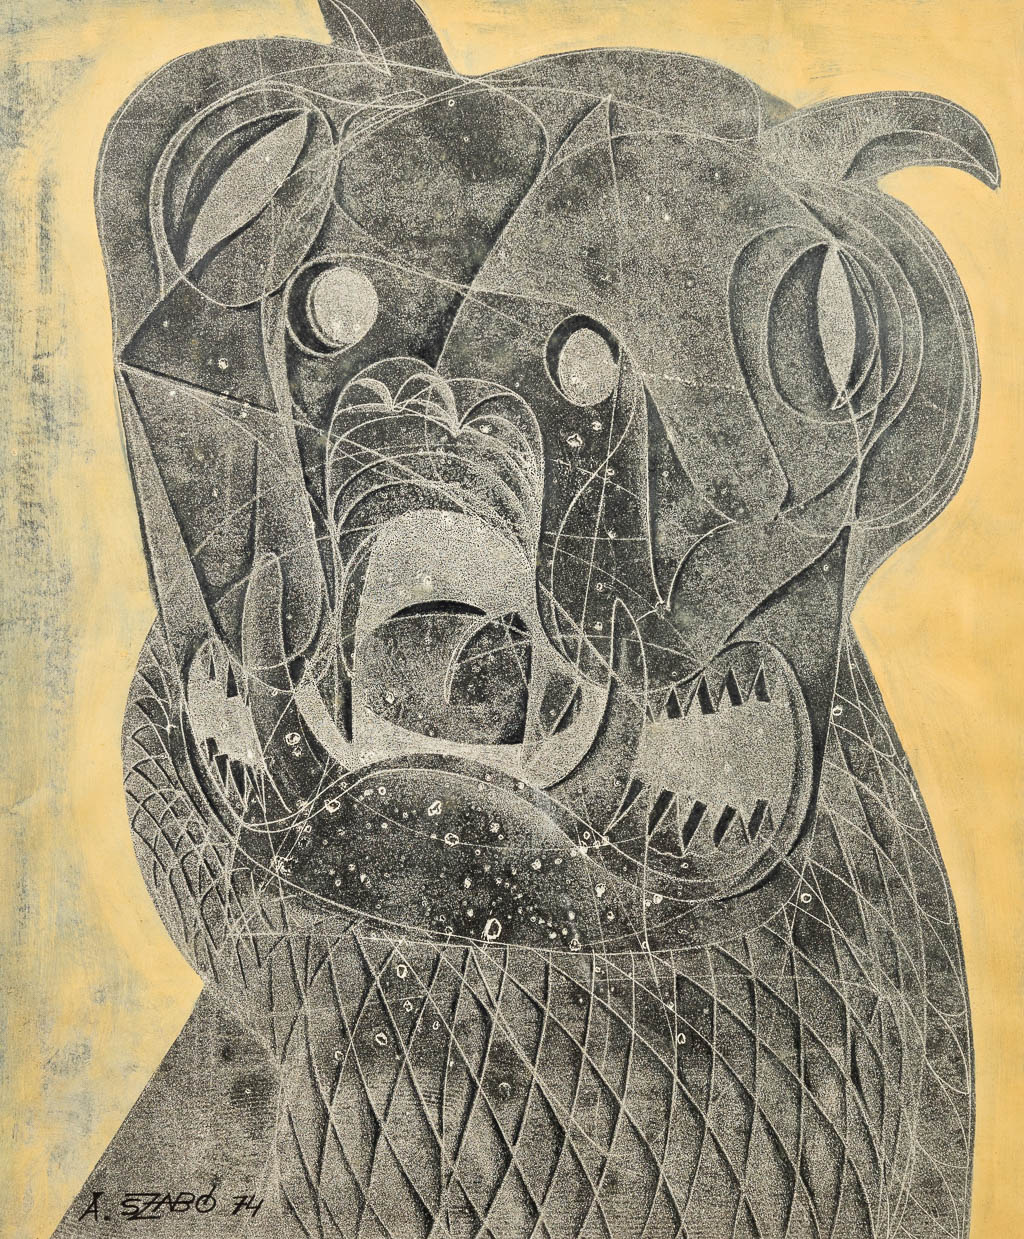 André SZABO (1923-2007) 'The Dog' een abstract werk, gemengde techniek op papier. 1974. (48 x 58 cm)